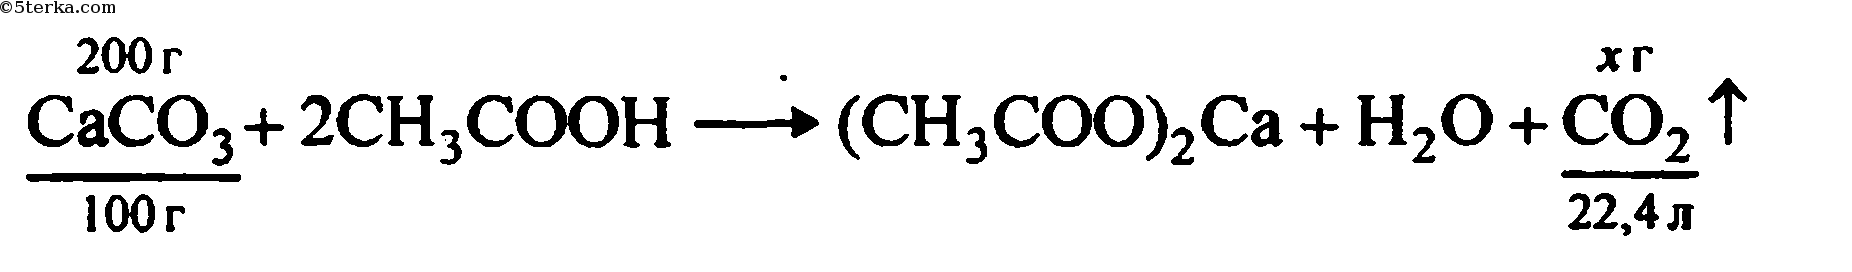 Взаимодействие уксусной кислоты с карбонатом кальция. Уксусная кислота и известняк. Получение уксусной кислоты из углекислого газа. Известняк и уксусная кислота реакция. Уксусная кислота и углекислый ГАЗ реакция.